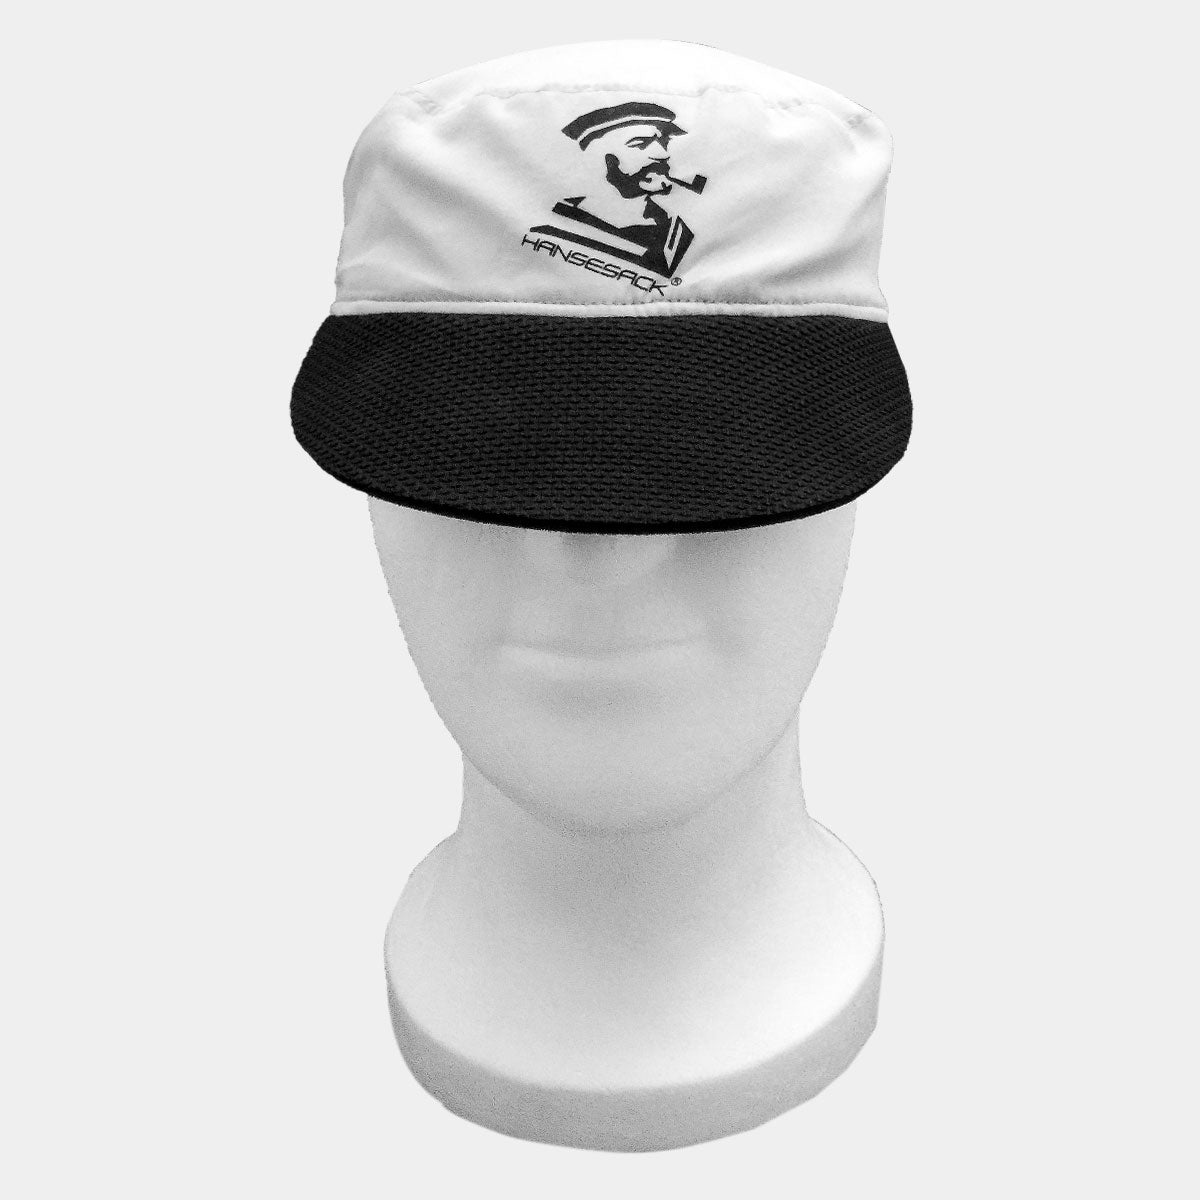 Hansesack Produktbild Seglermütze Wendemütze graue Seite mit Hansesack Kopf Logo von vorne